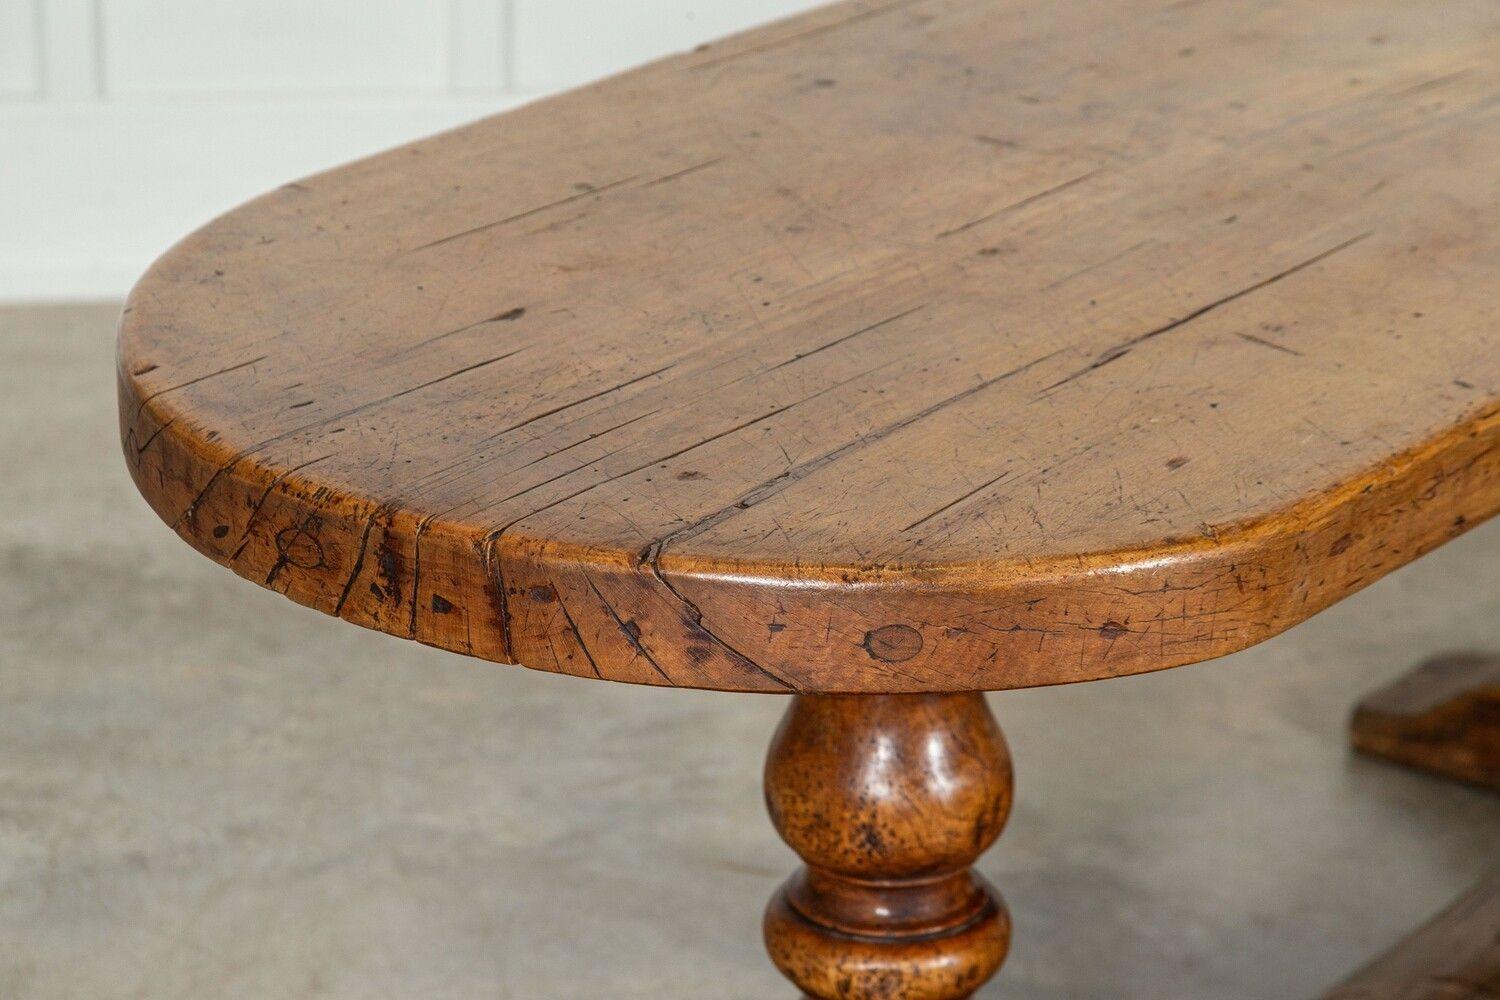 um 1780
18. Jahrhundert Französisch Ulme Refektorium Tisch
sku 1670
Ein außergewöhnliches Beispiel
W200 x D70 x H75 cm
Kniehöhe 69 cm